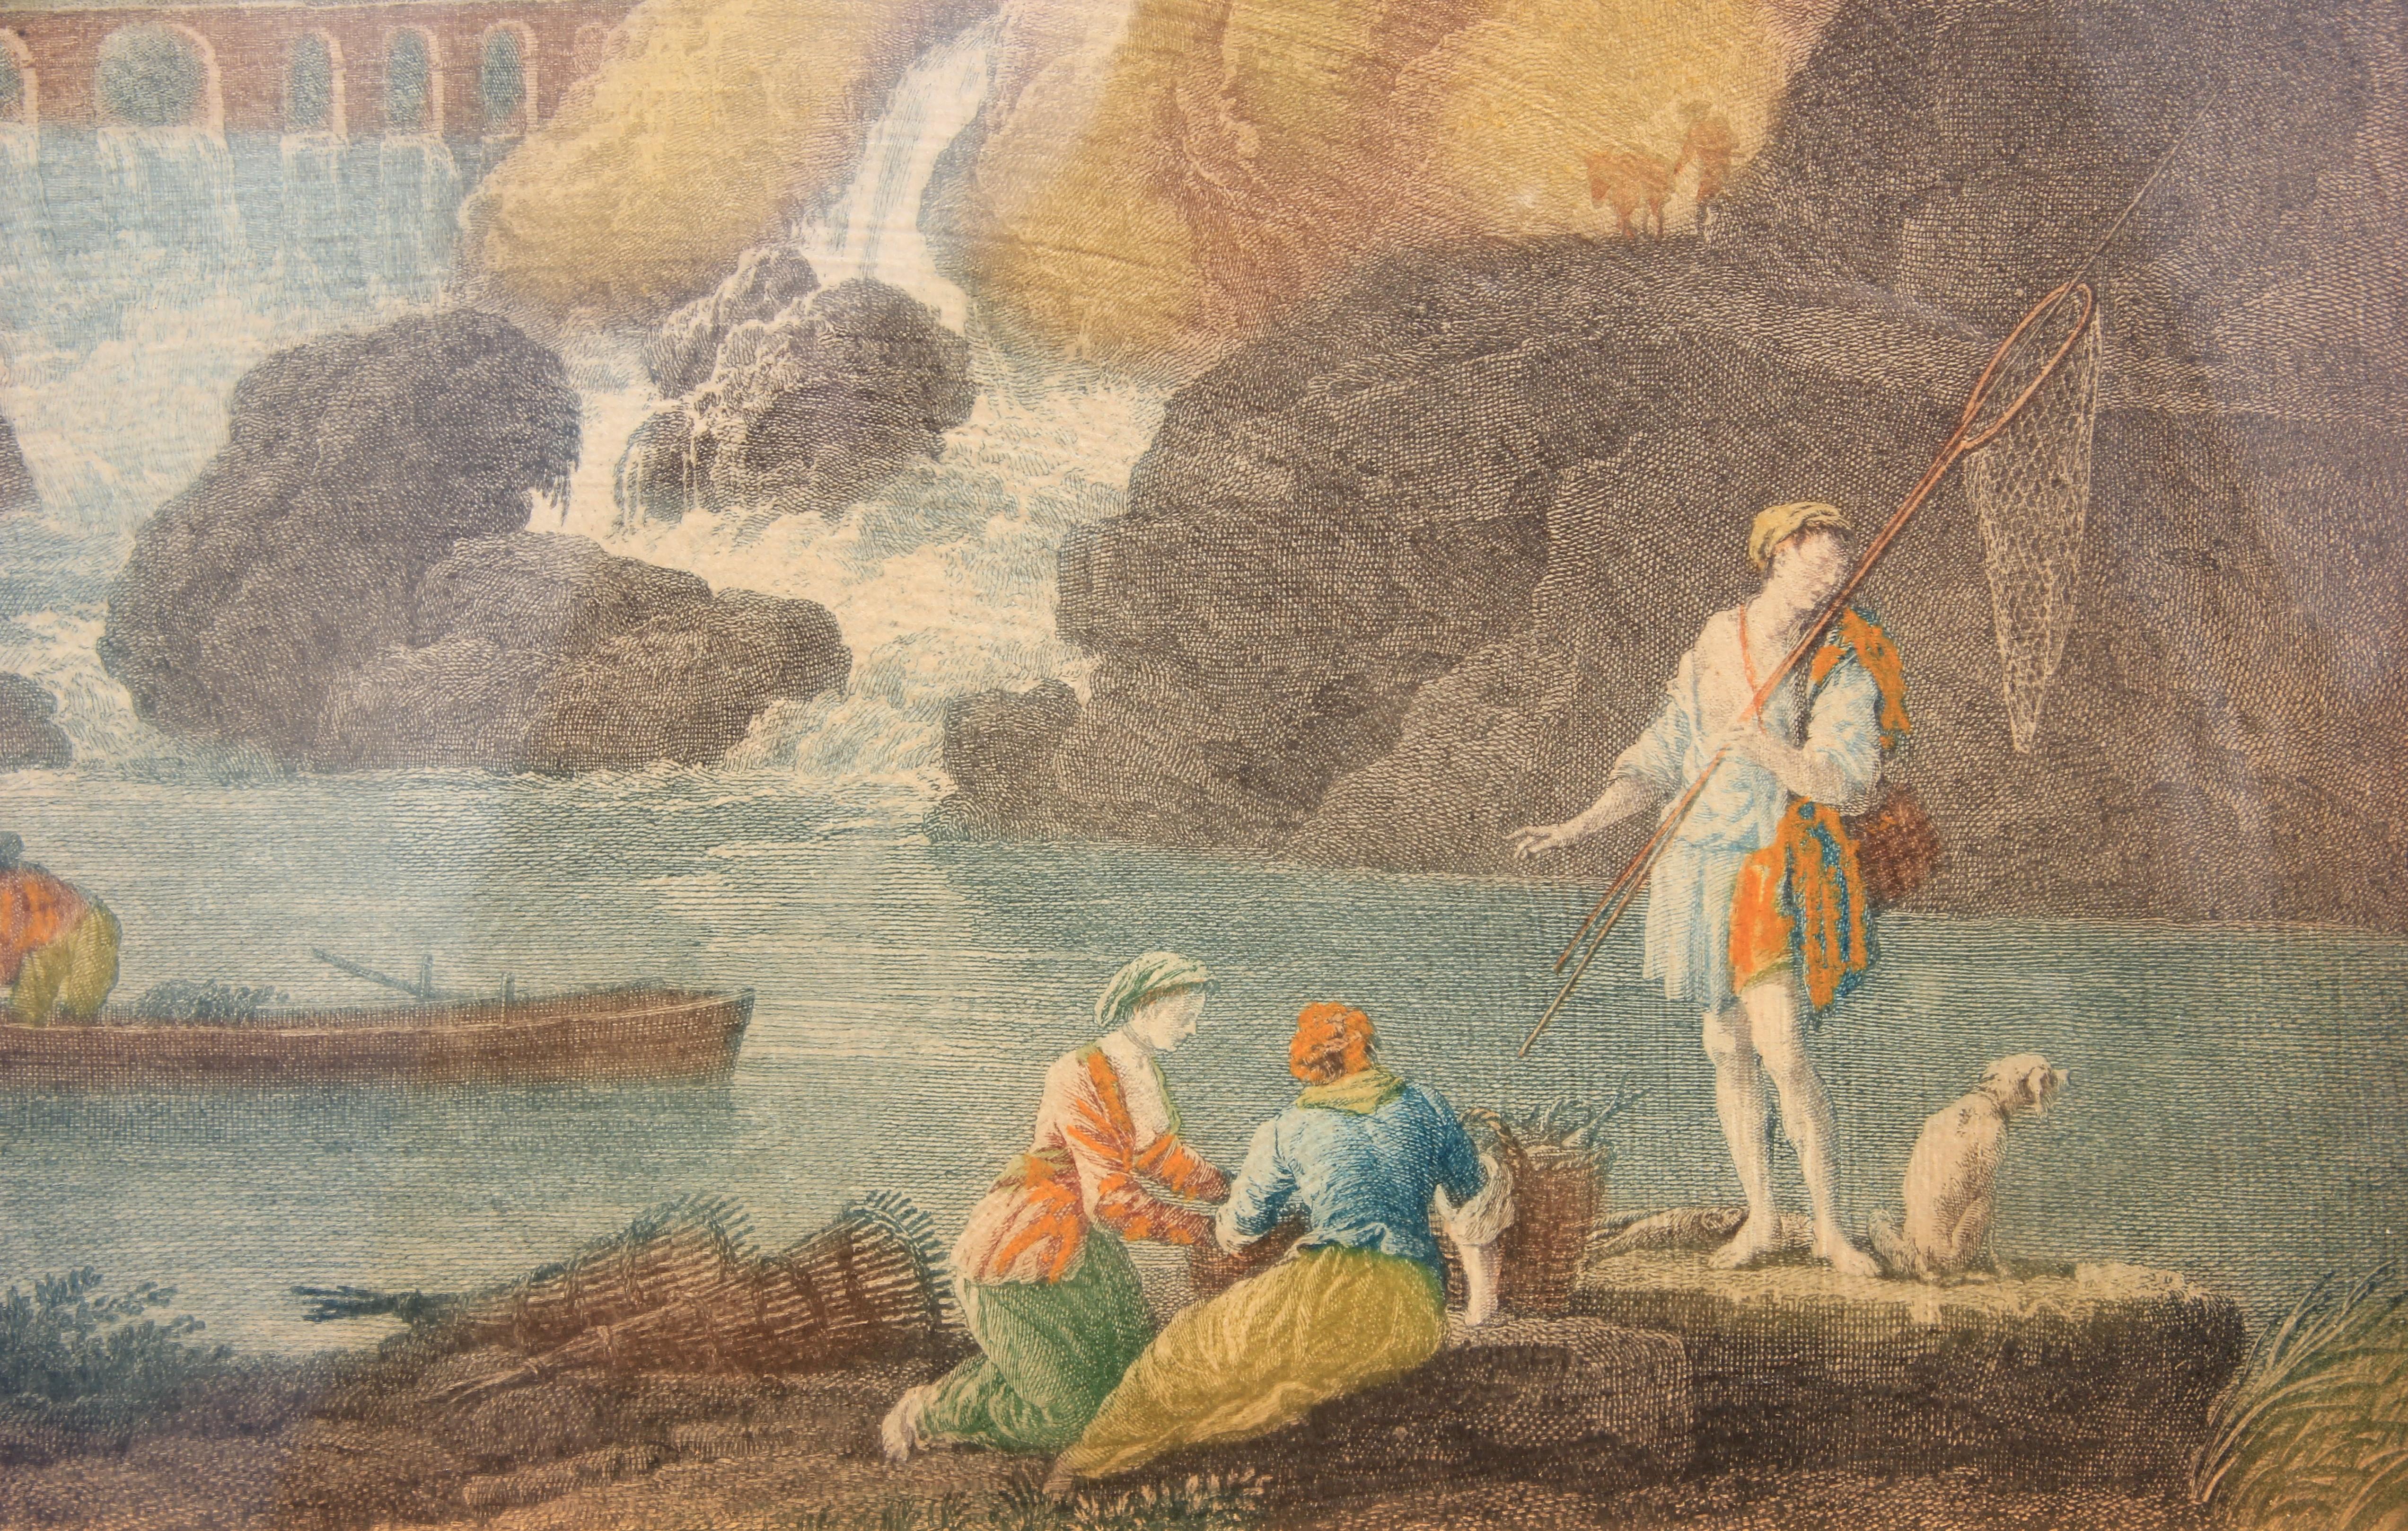 Gravure de paysage néoclassique de pêcheurs dans le style de Joseph Vernet - Print de Claude-Joseph Vernet